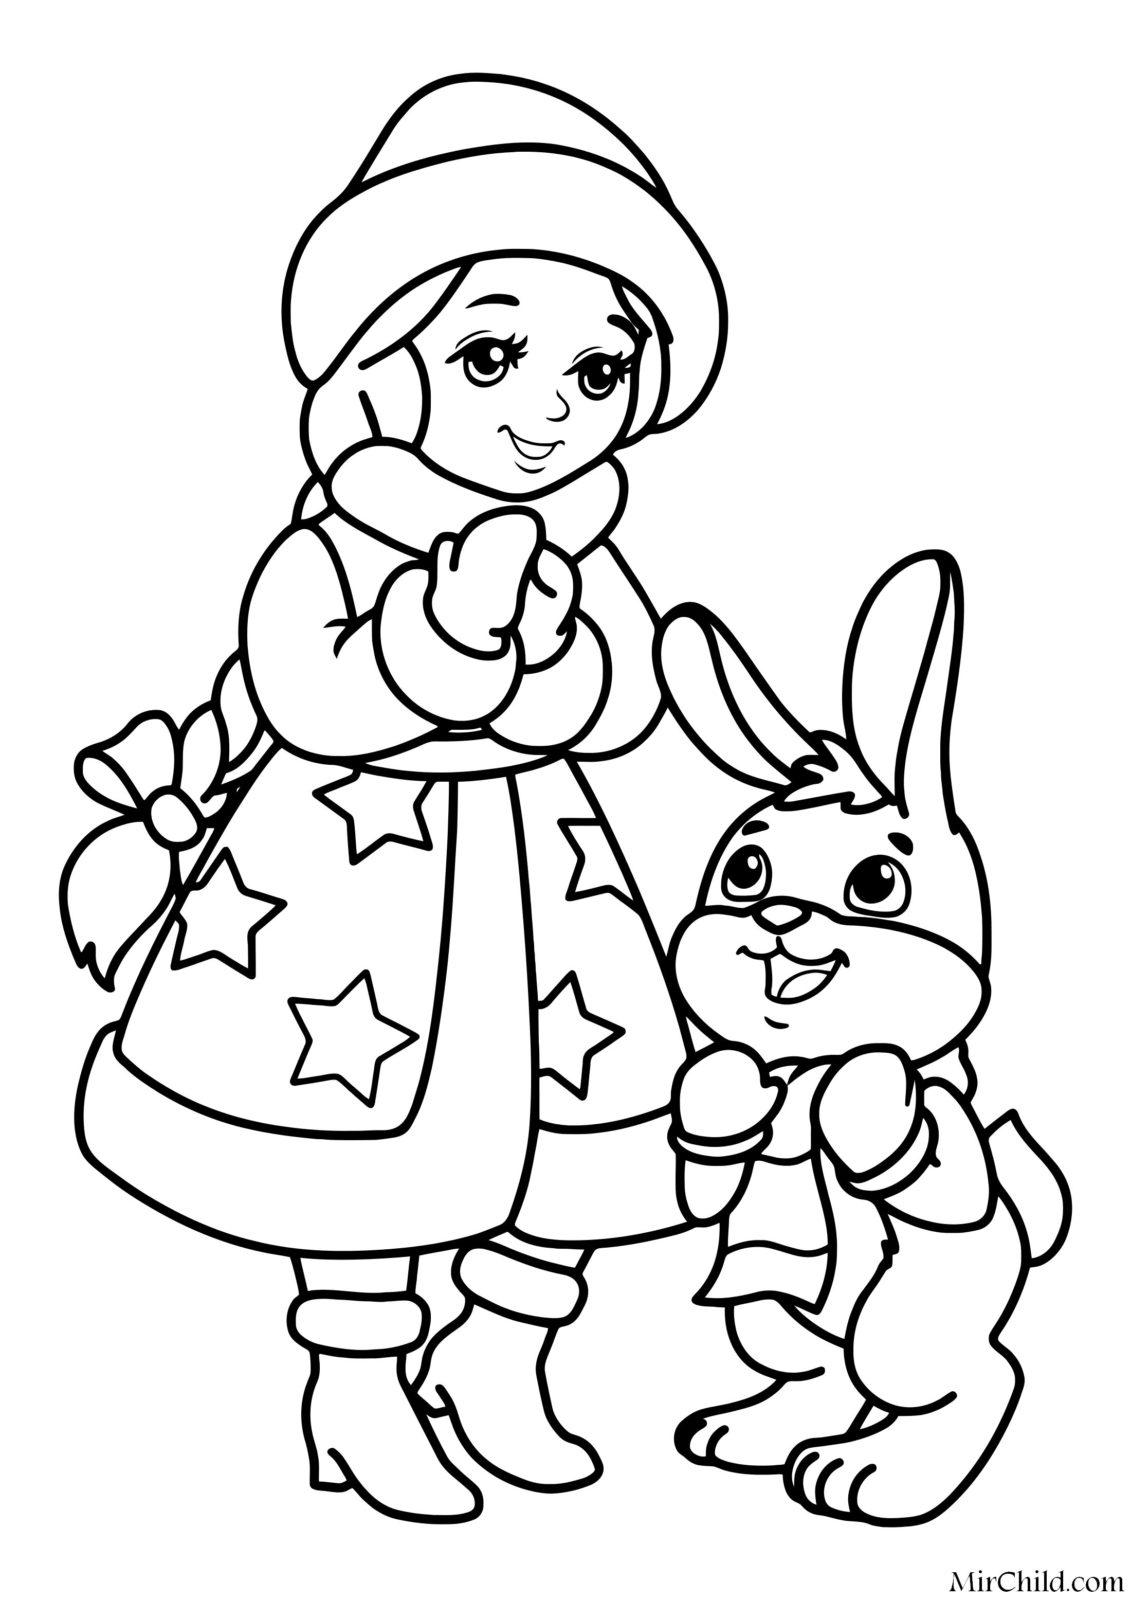 новогодний кролик раскраска для детей 6